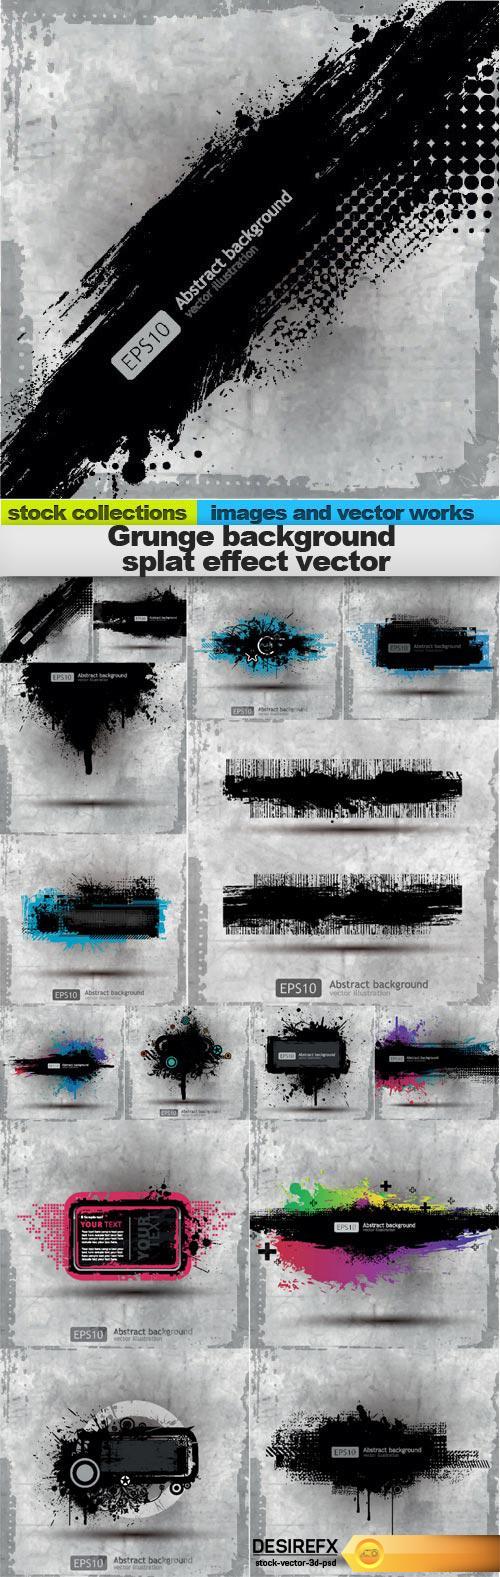 Grunge background splat effect vector, 15 x EPS